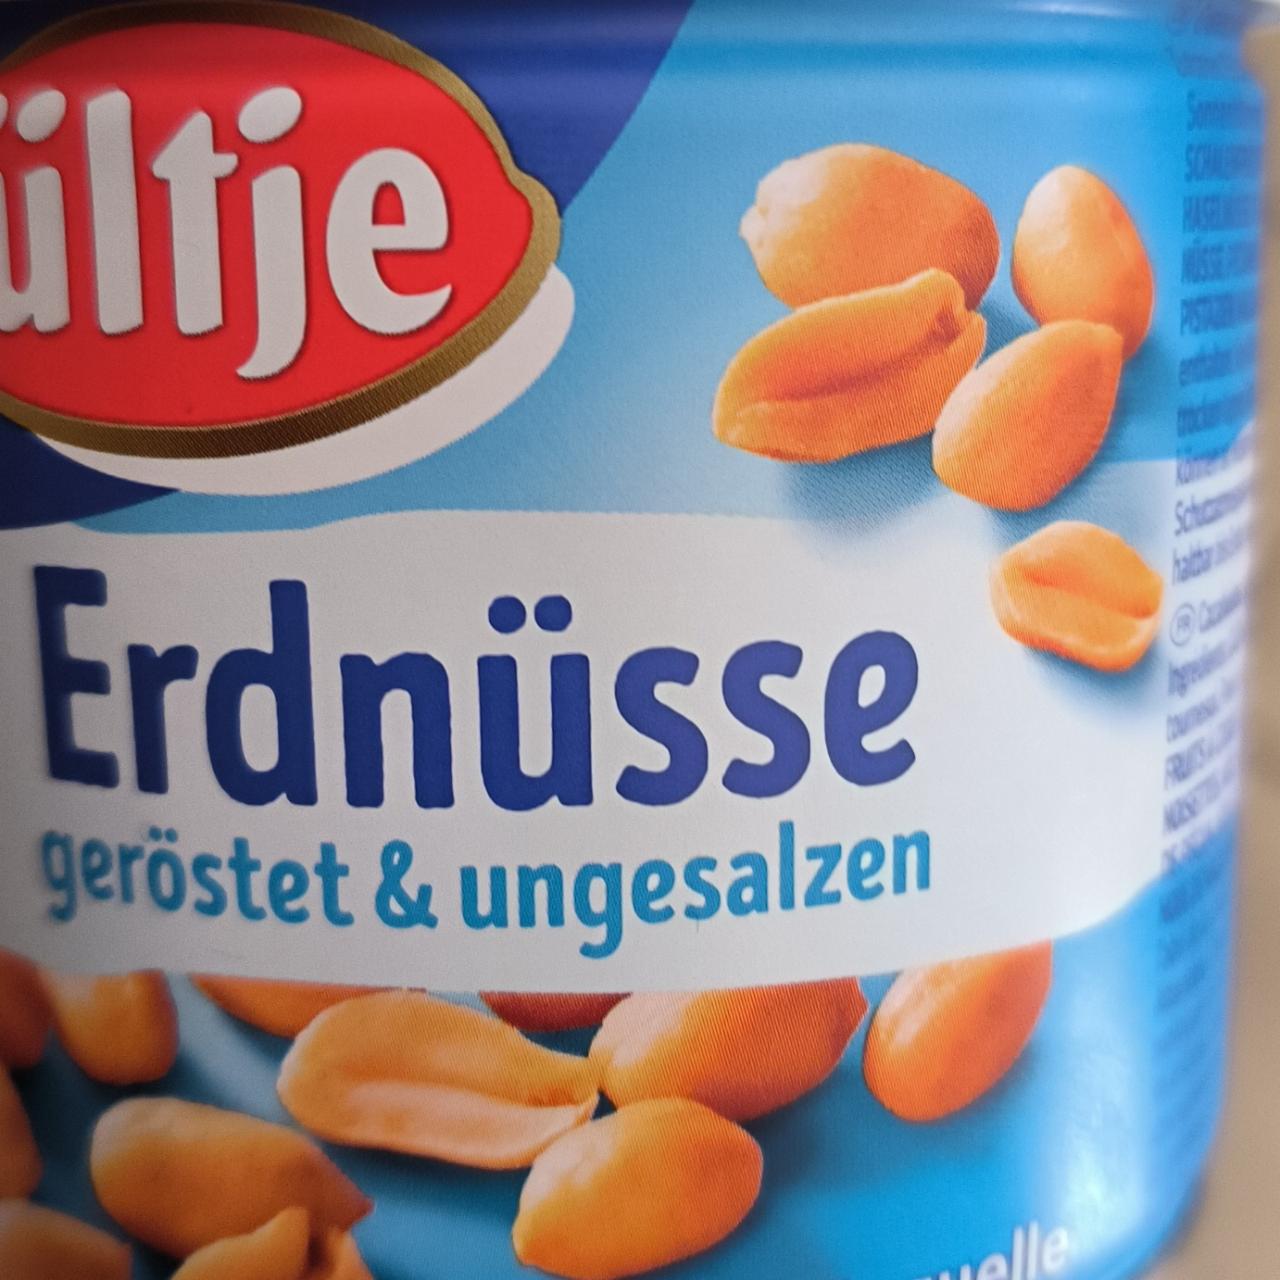 Zdjęcia - Erdnüsse geröstet ungesalzen Ültje